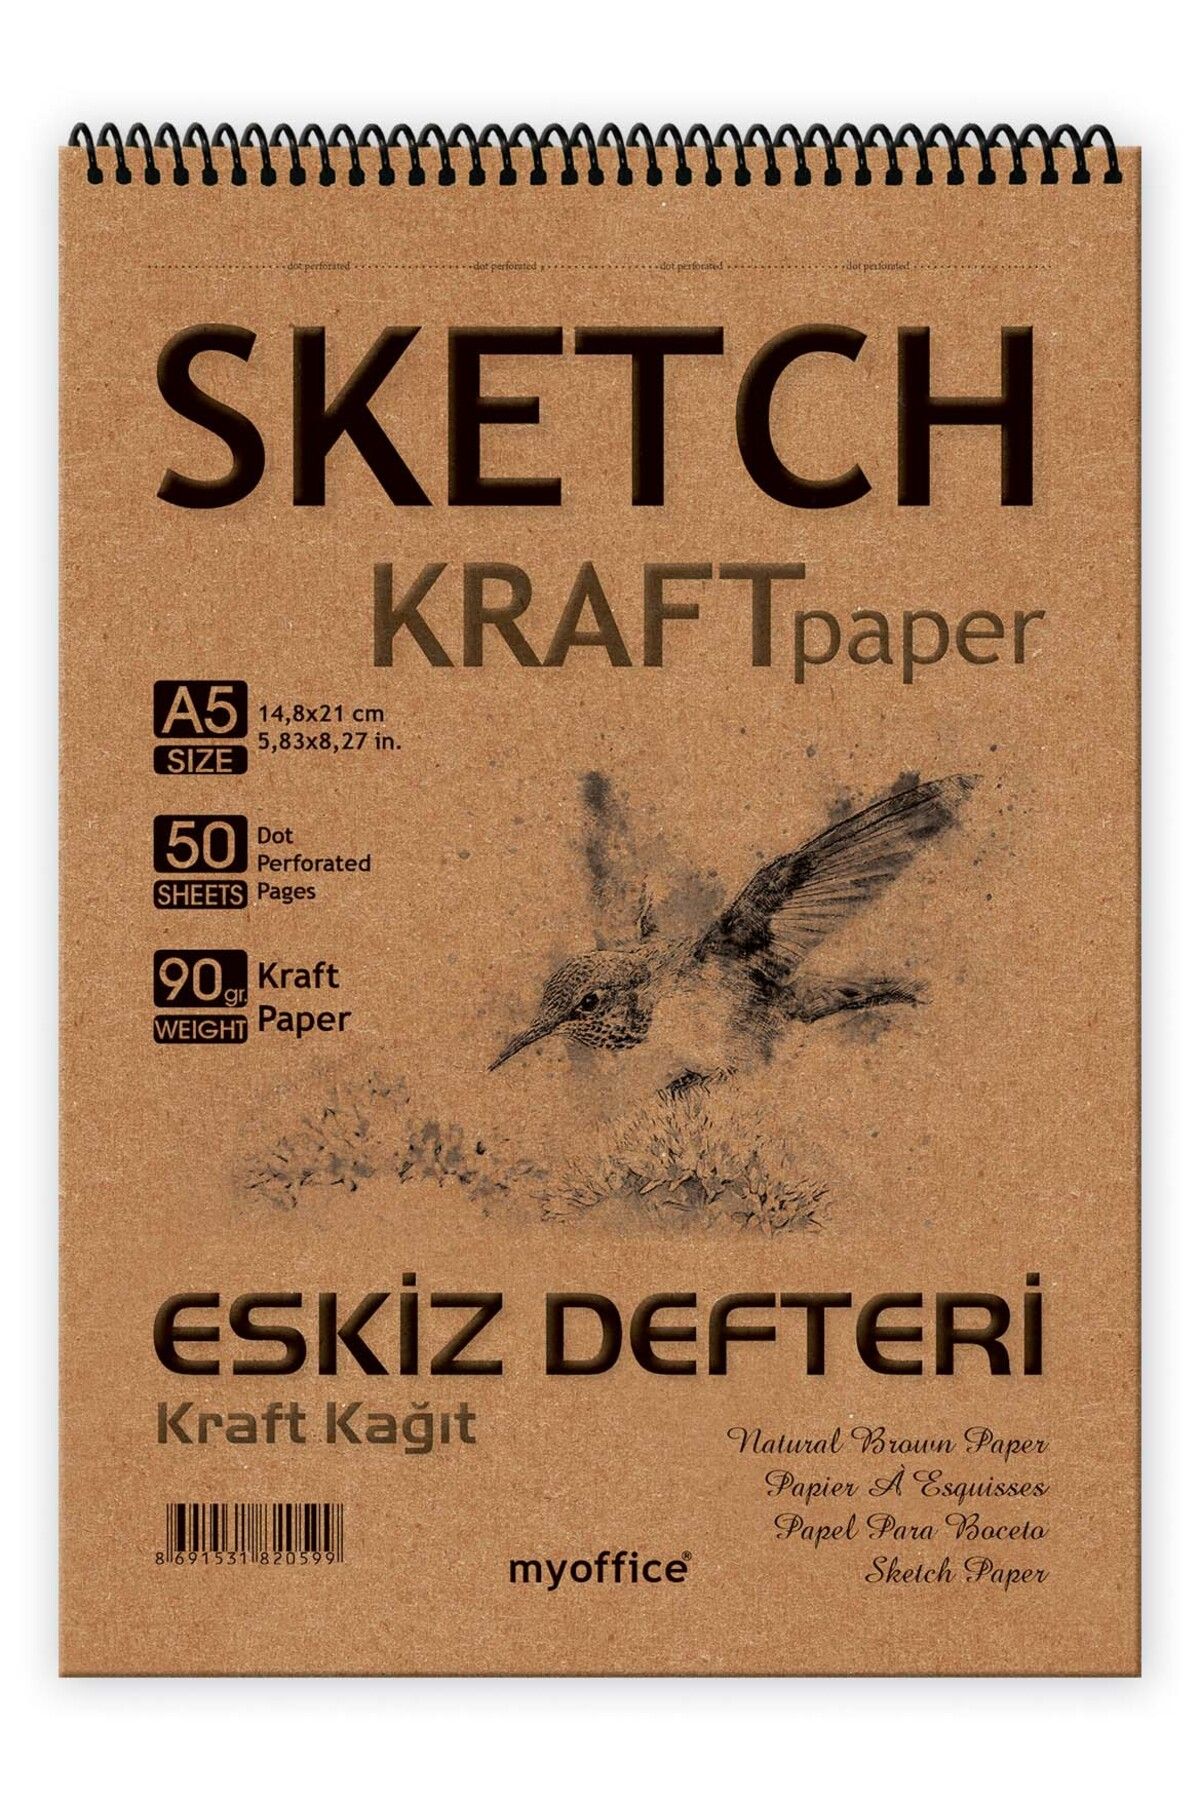 Etika Kraft Kağıt A5 Eskiz Defteri 90 gr. Spiralli 50 Yaprak Sketchbook